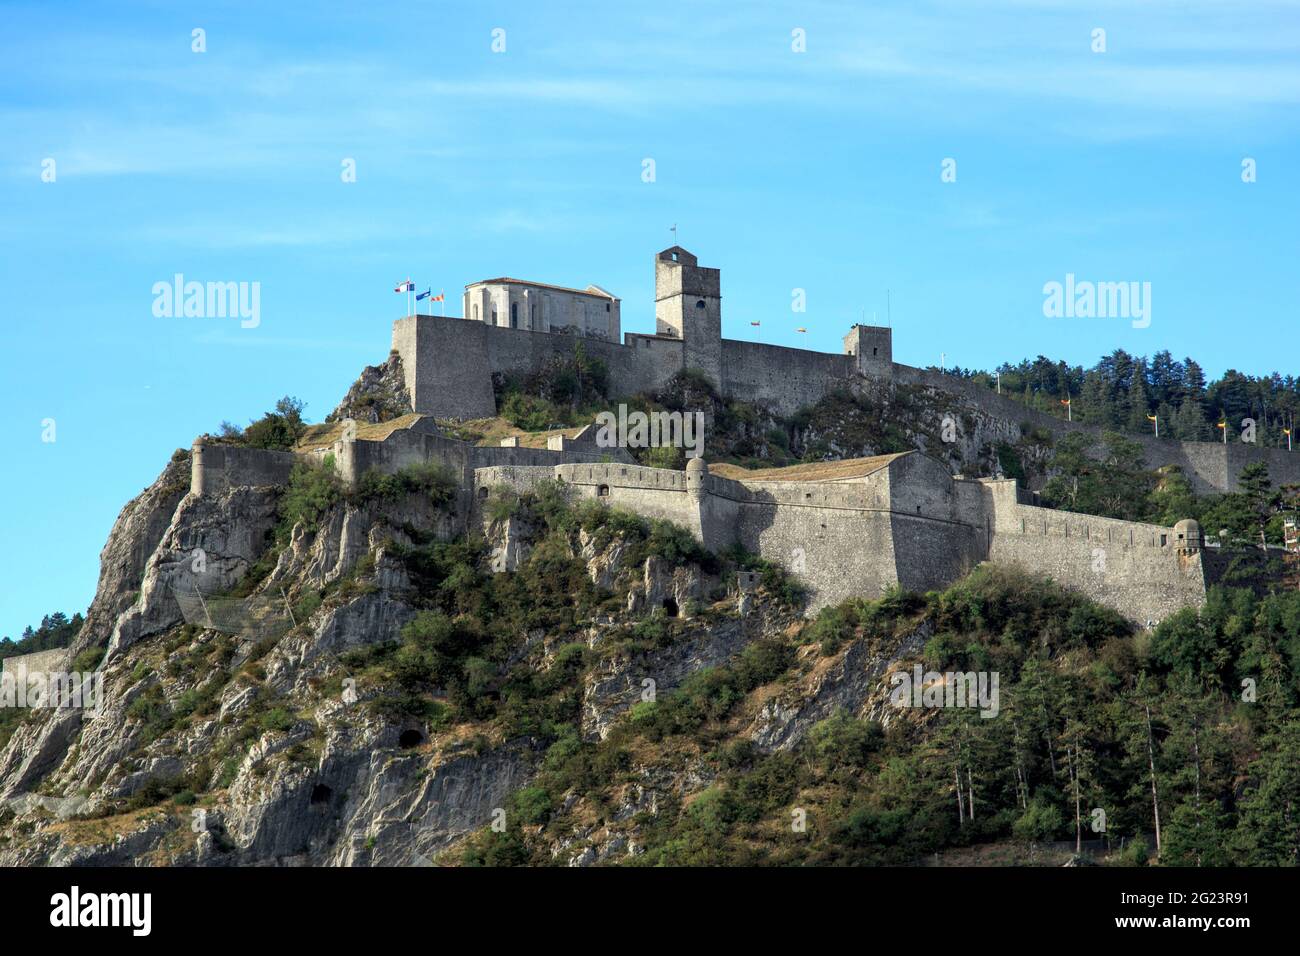 Sisteron (sud-est de la France) : la citadelle, bâtiment classé monument historique national (monument historique français) Banque D'Images